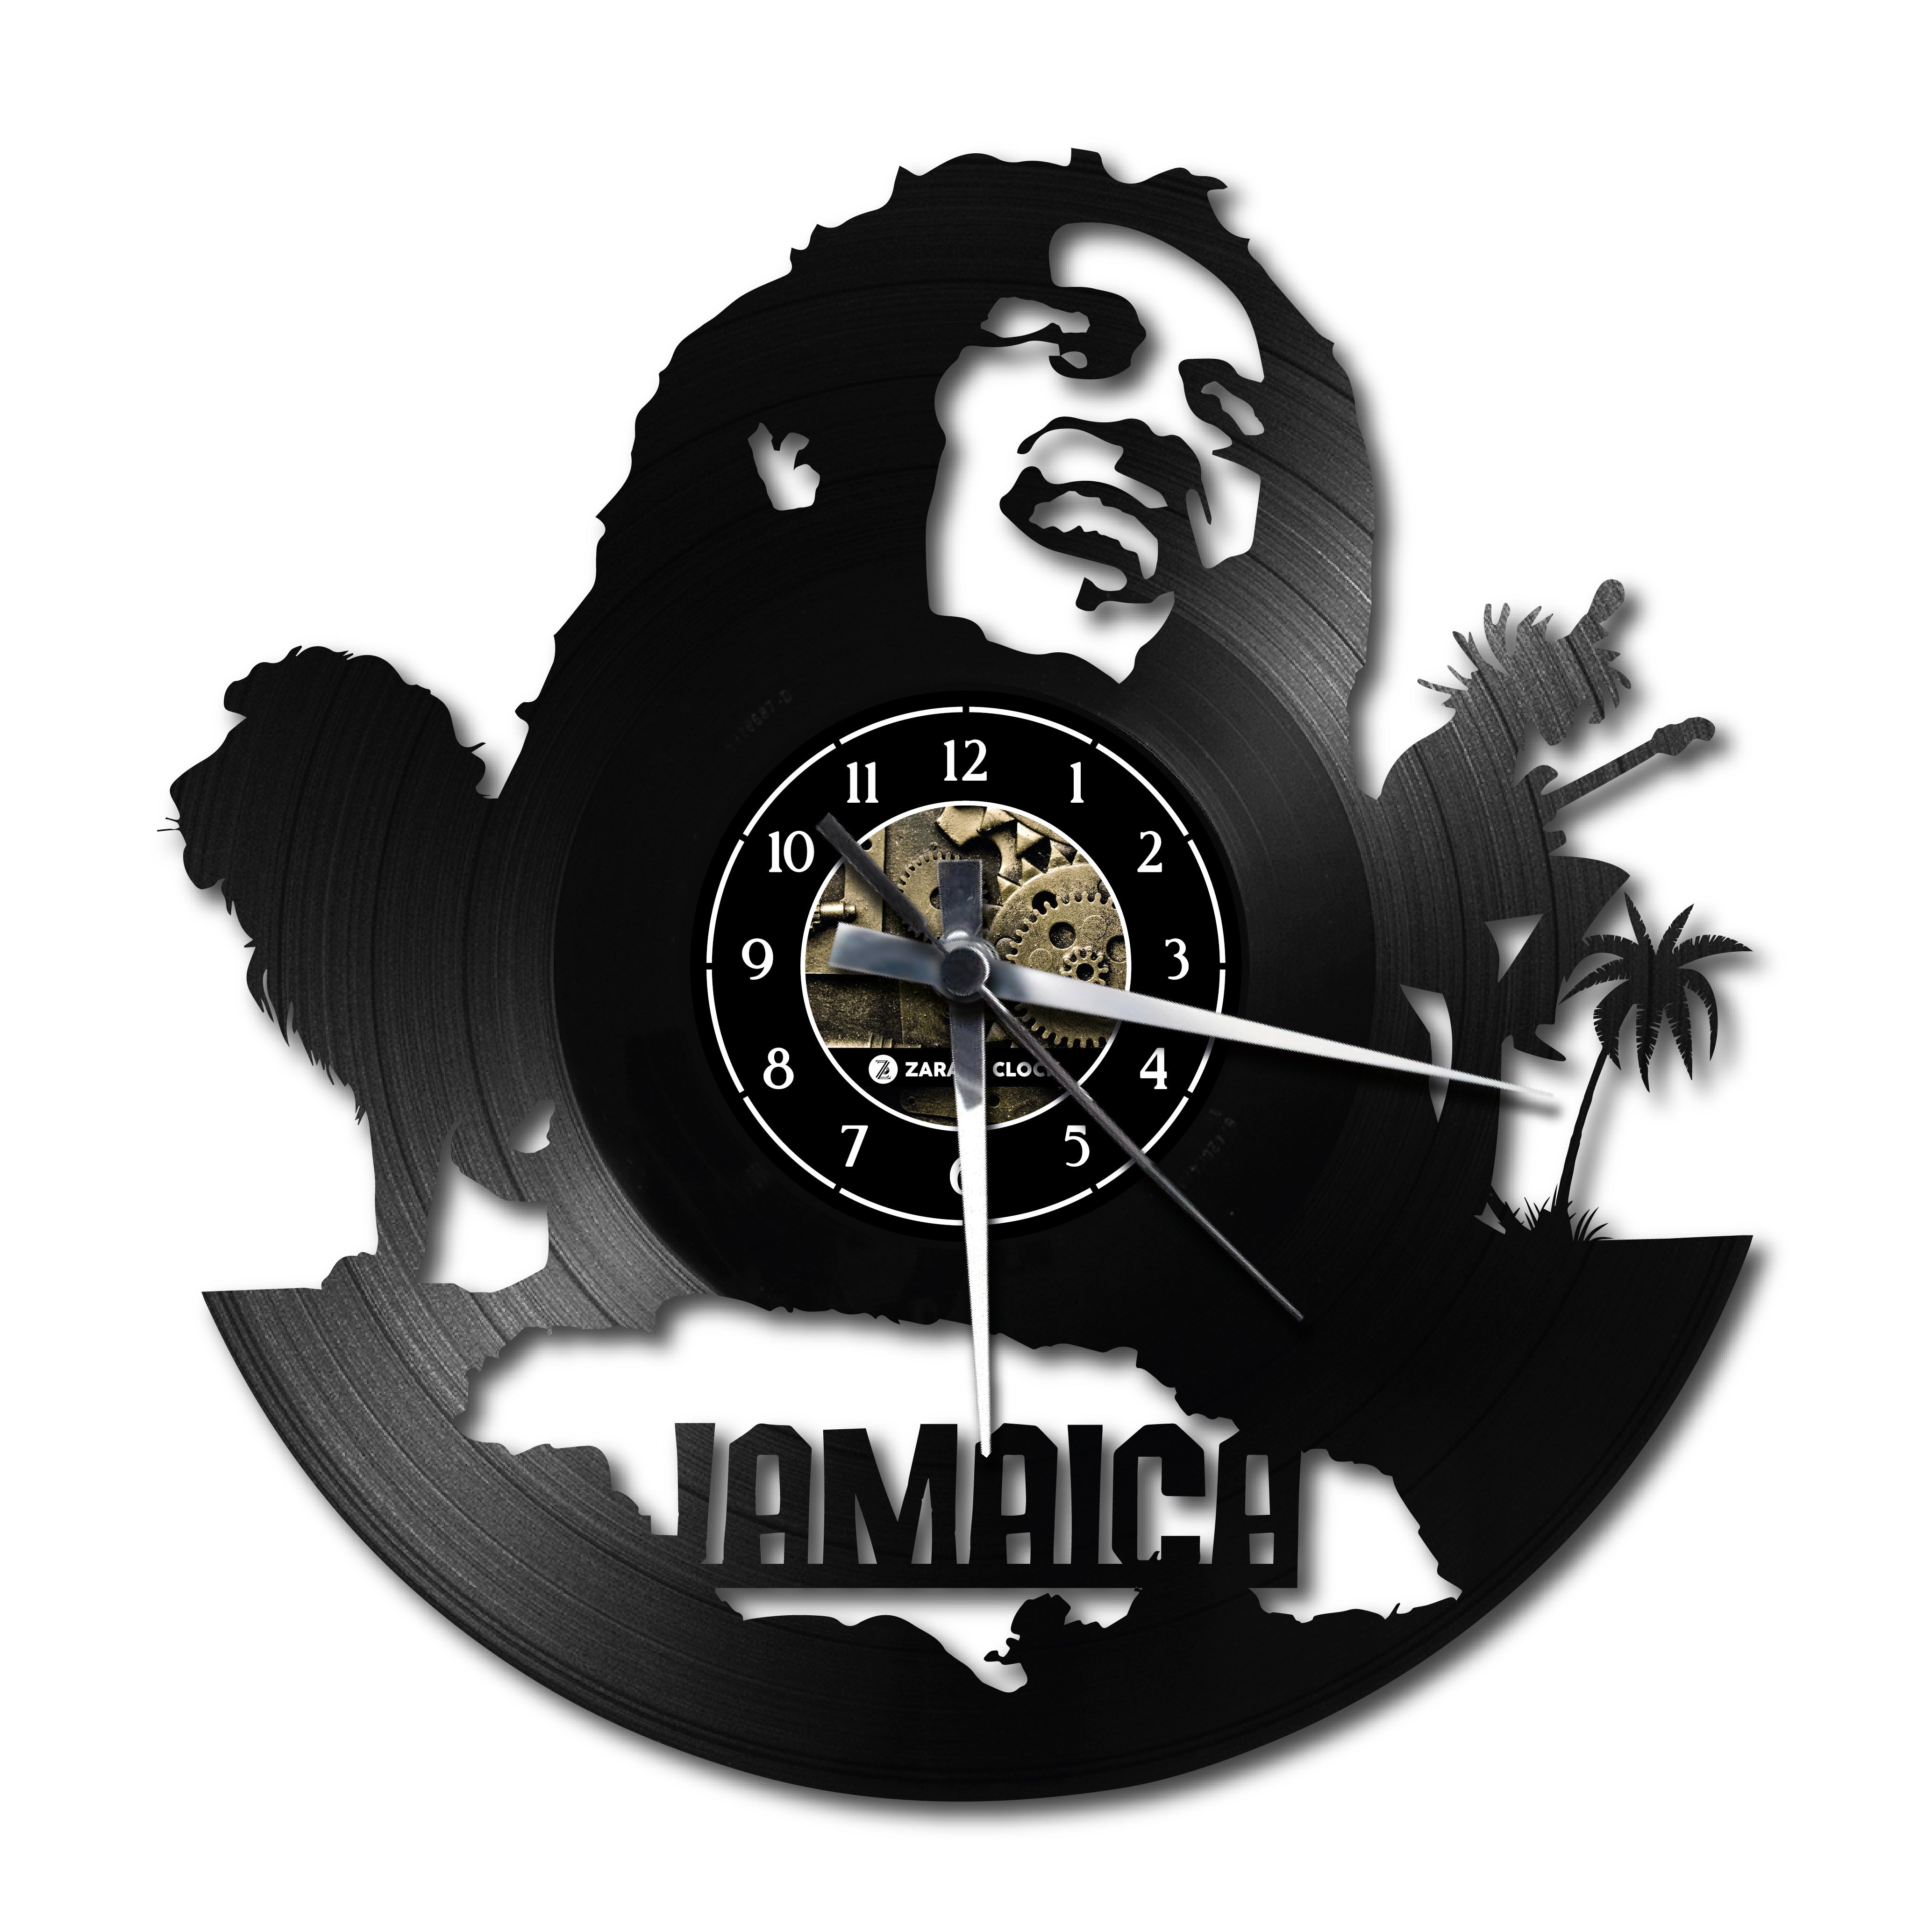 JAMAICA ✦ orologio in vinile